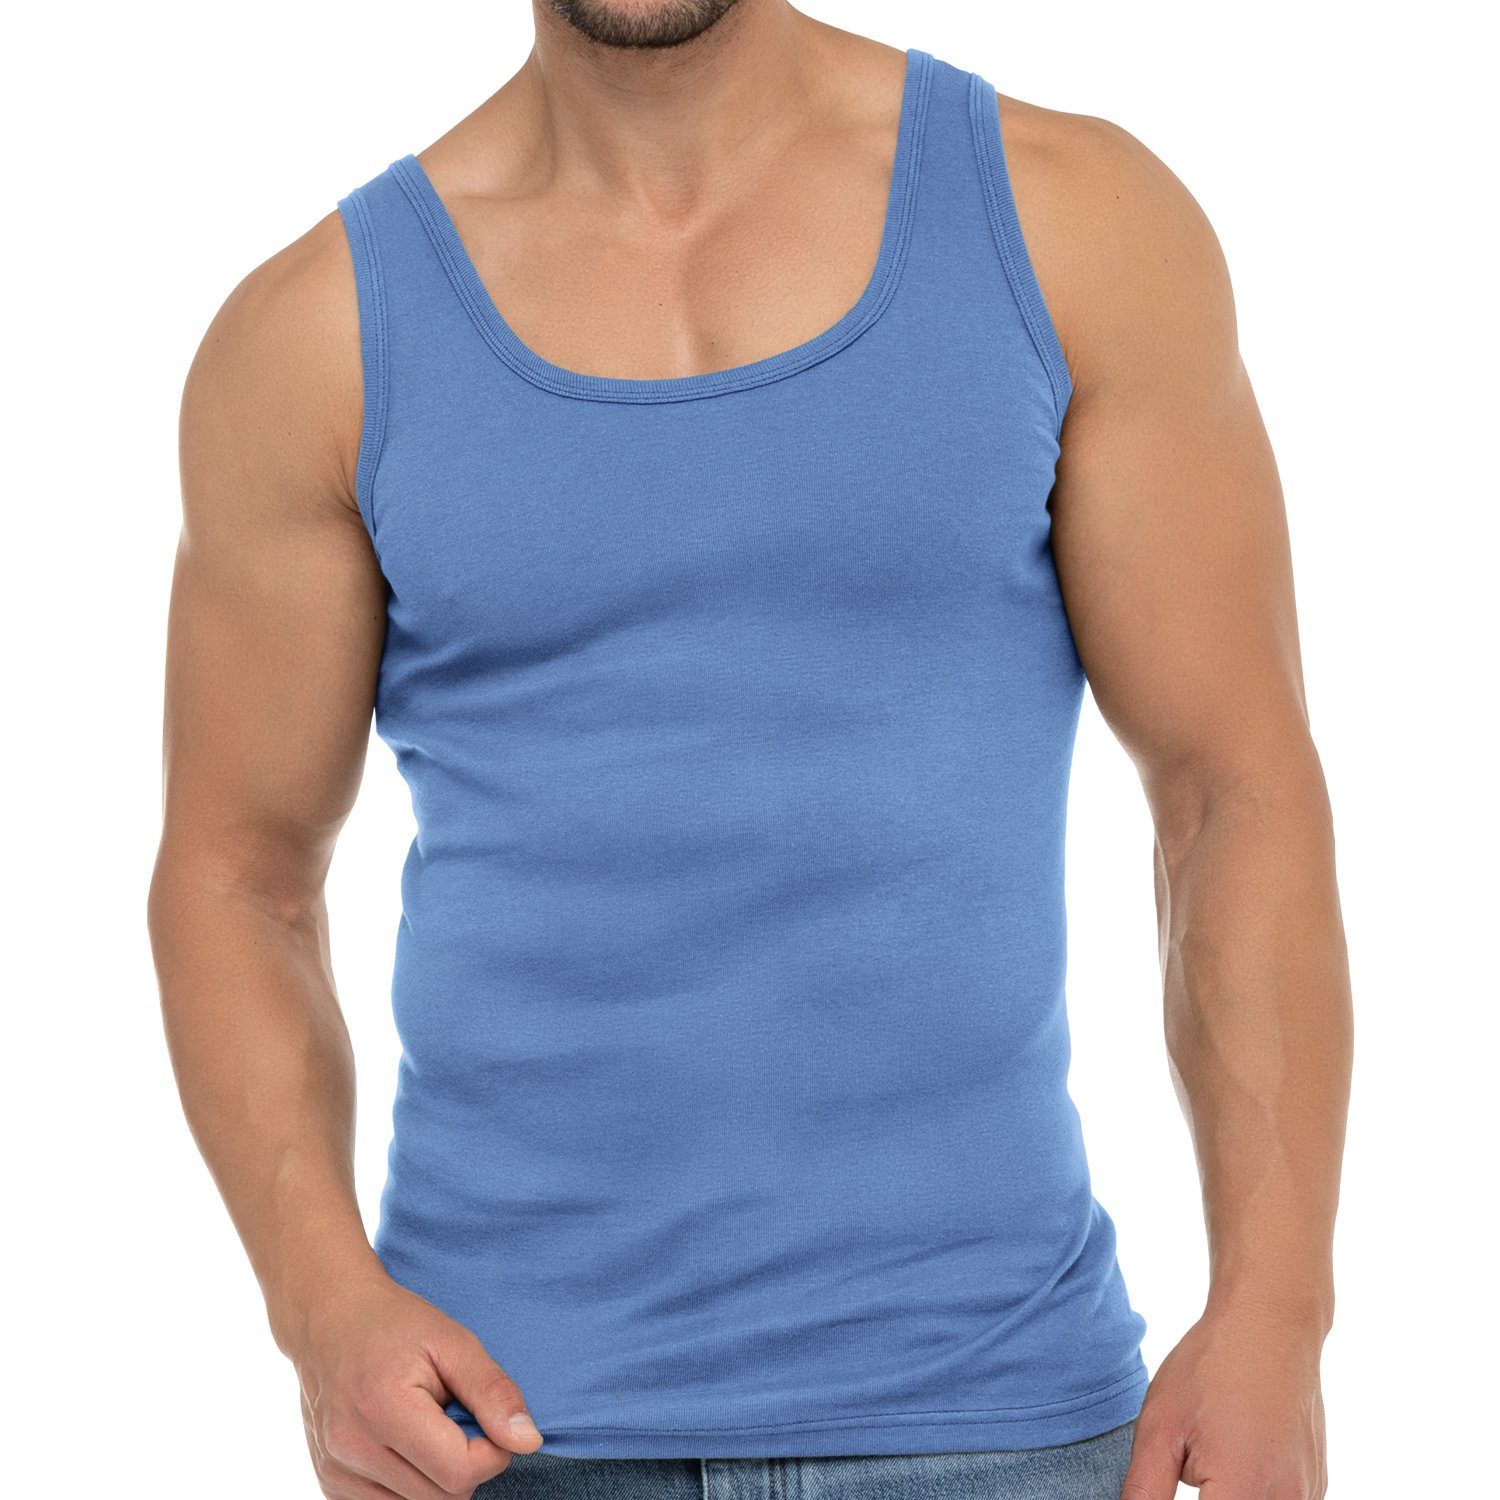 celodoro Unterhemd Herren Business Tank Top Achselhemd aus Baumwolle Carolina Blue